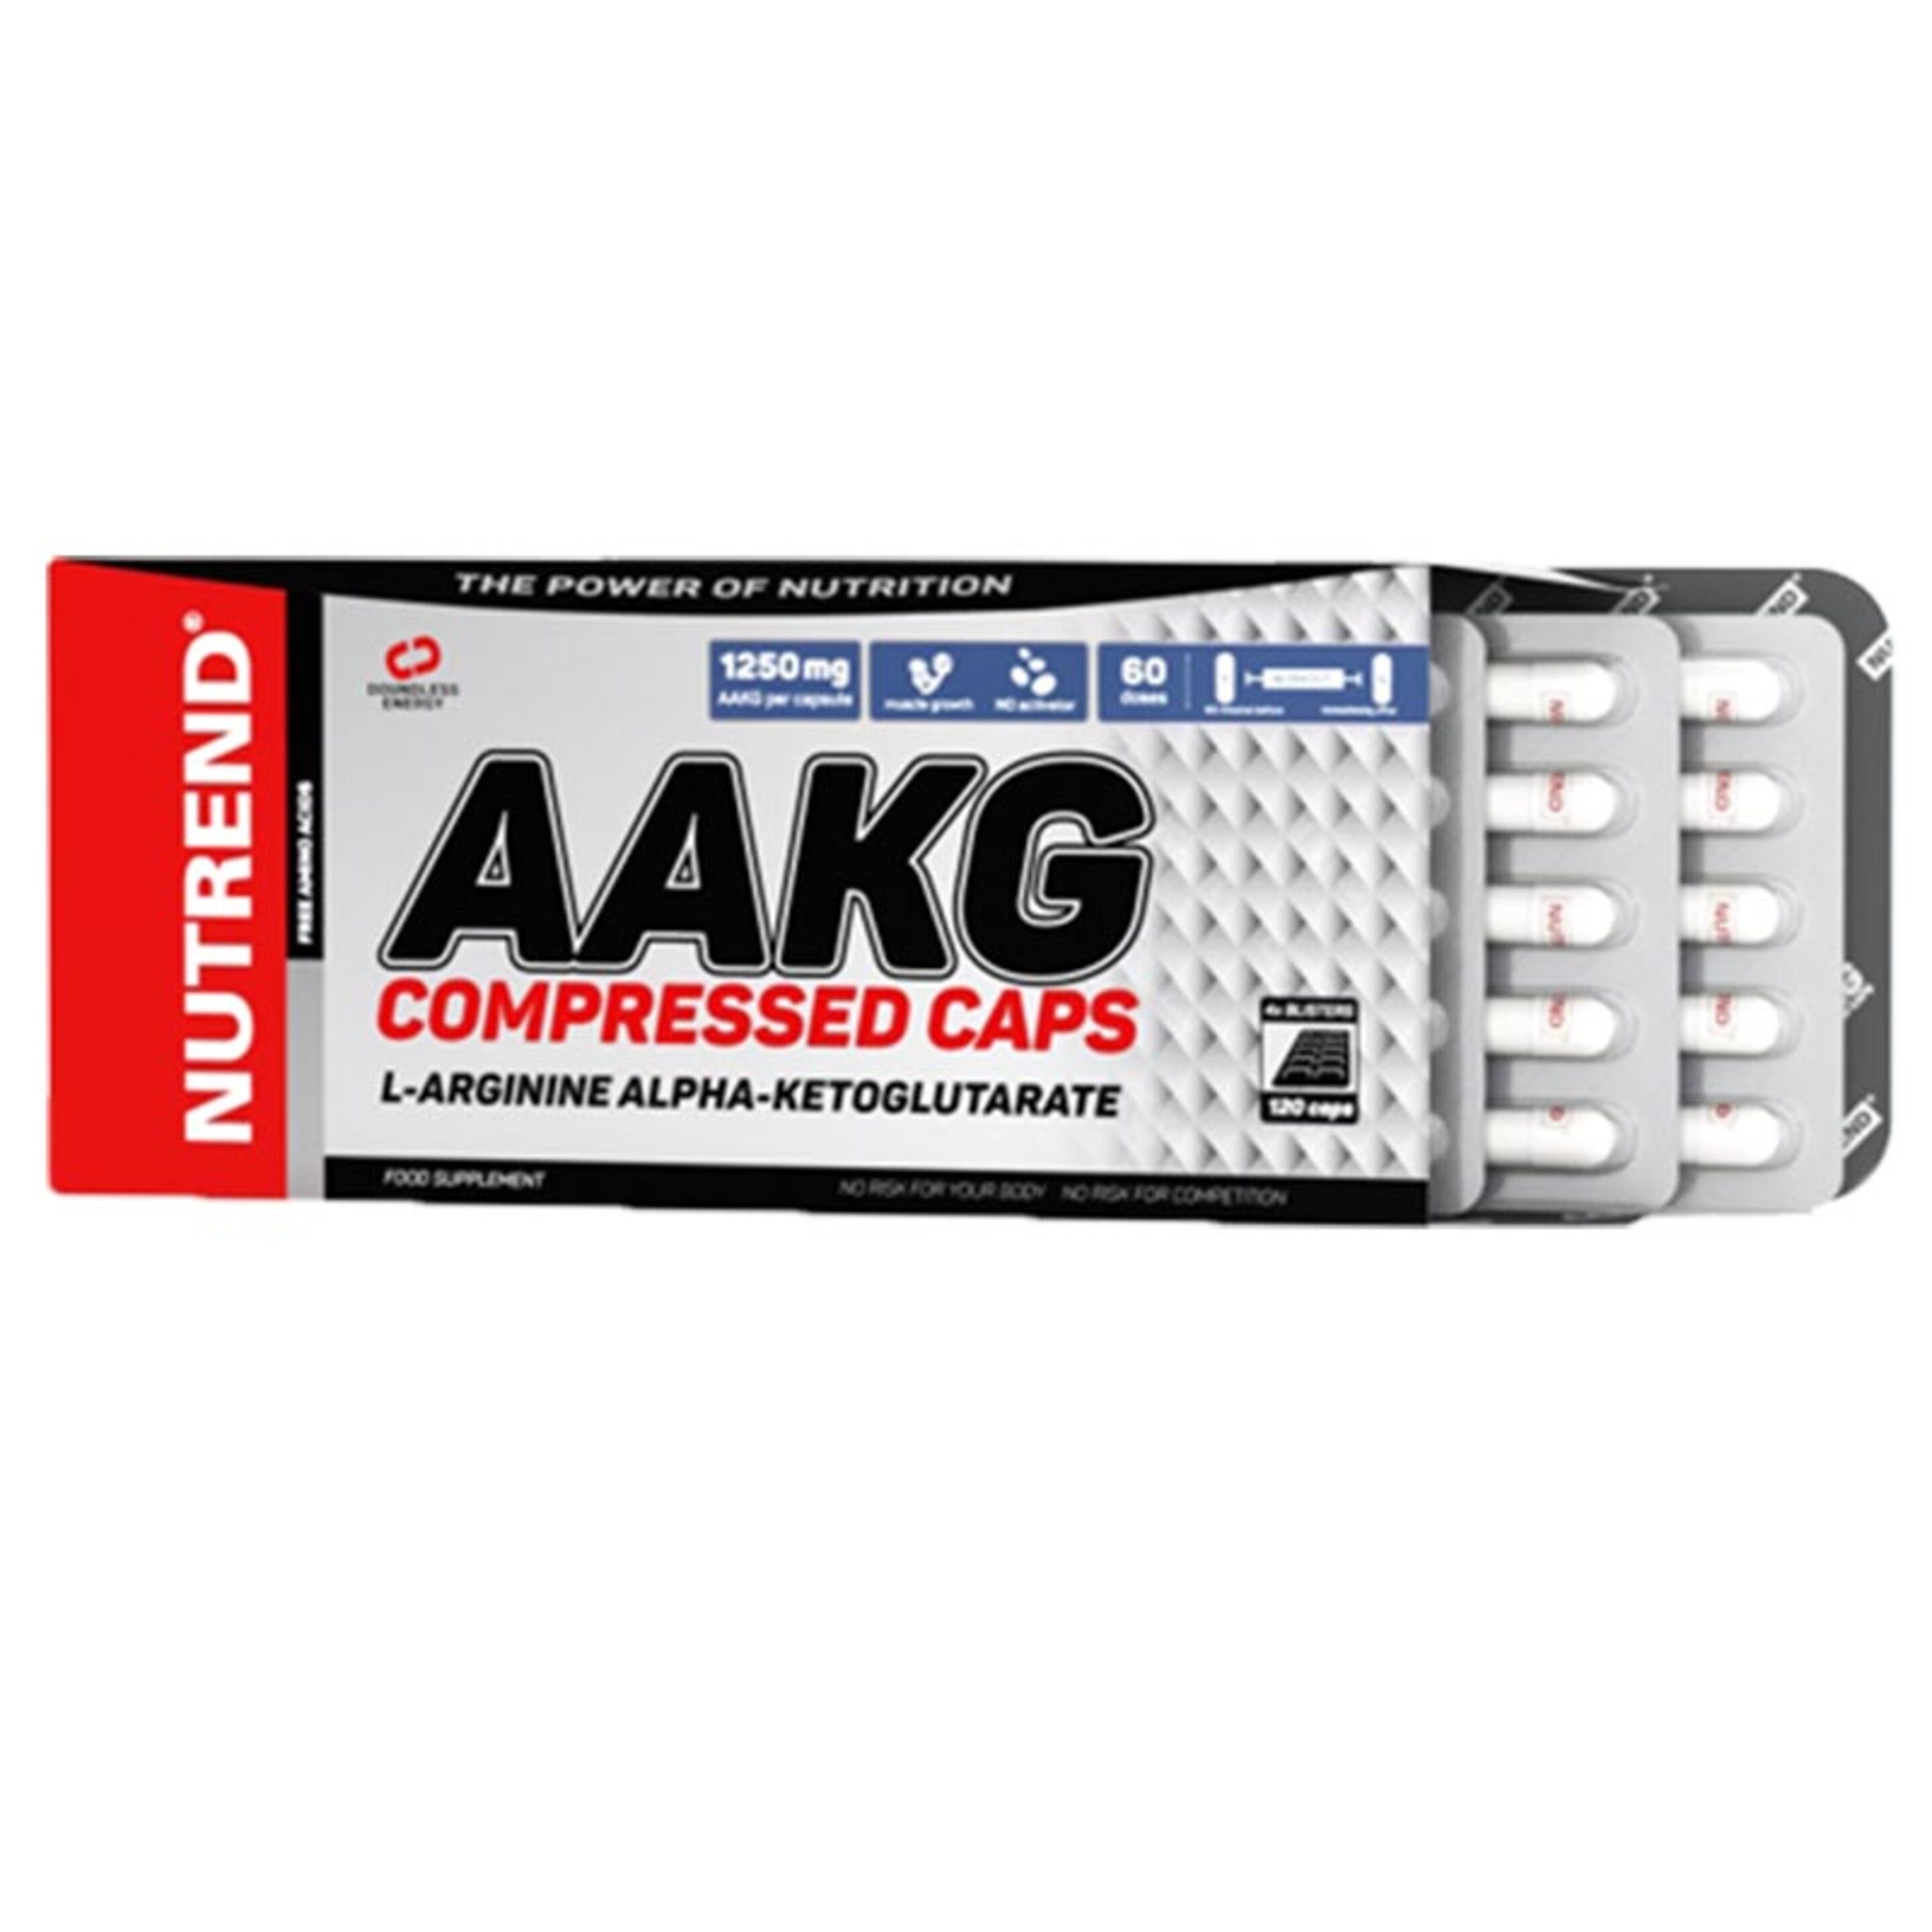 Aakg Compressed Caps - 120caps